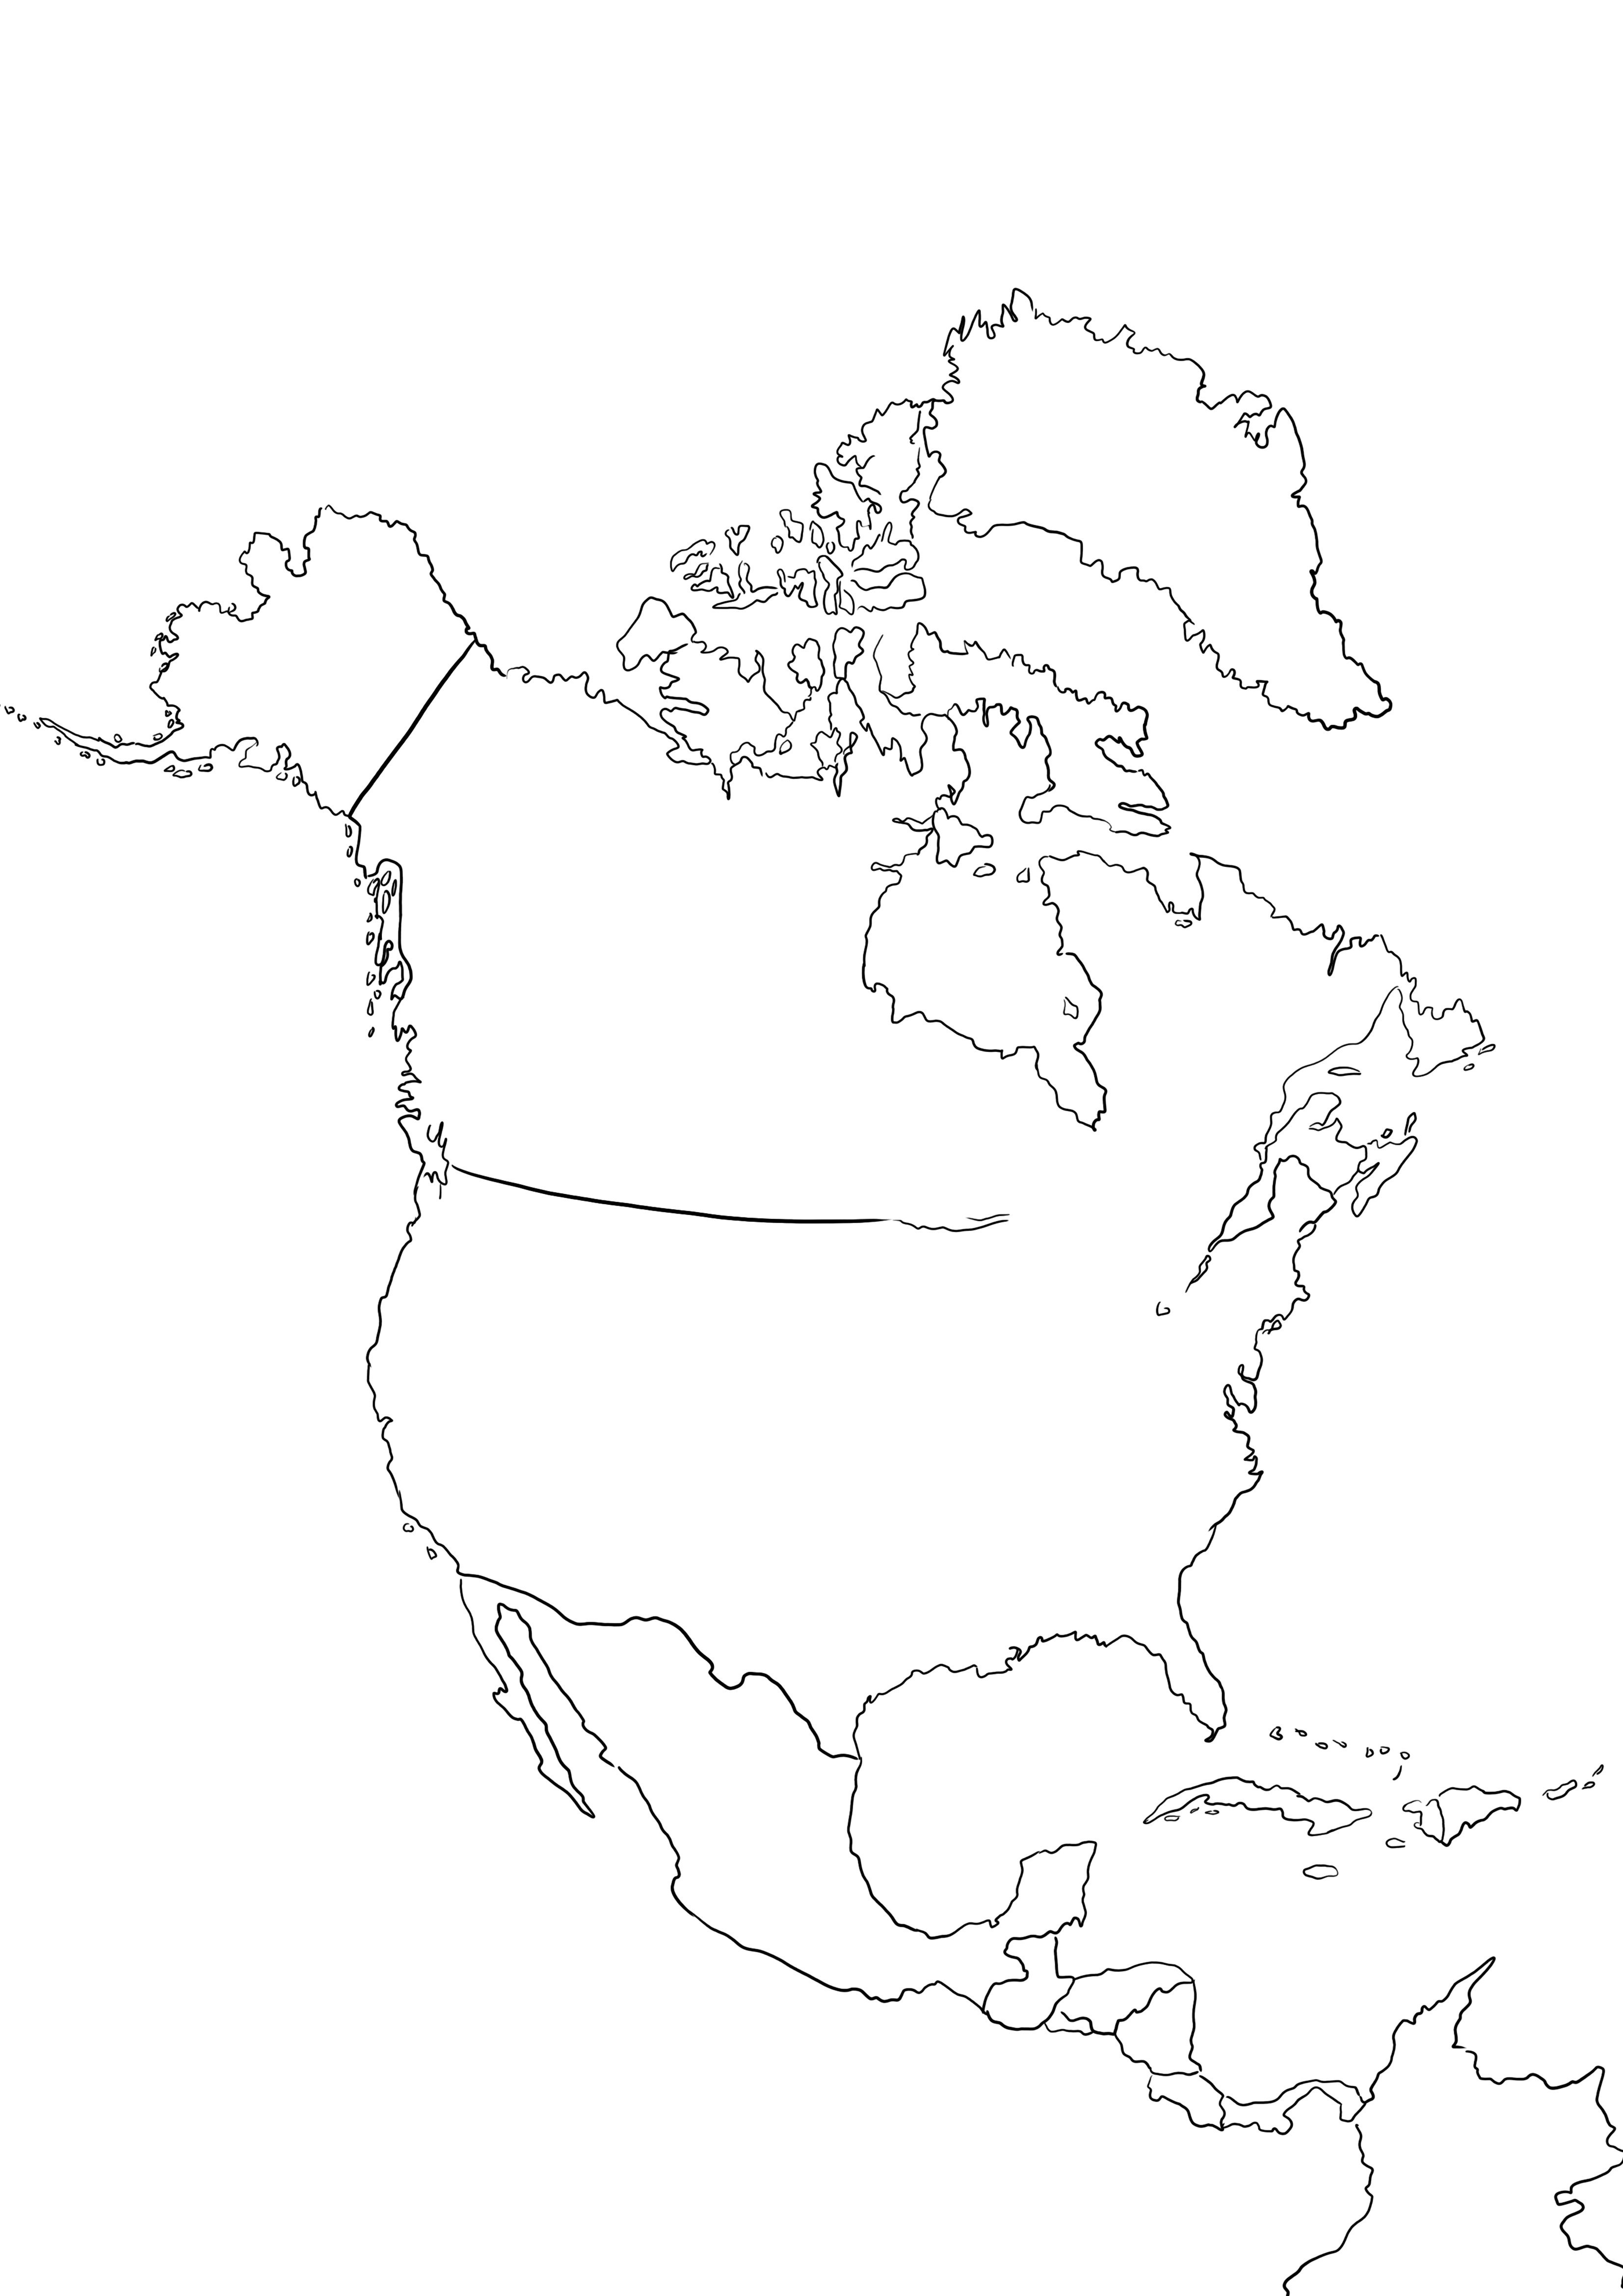 Mapa Ameryki Północnej bezpłatnie do wydrukowania i pokolorowania dla dzieci, aby dowiedzieć się o krajach